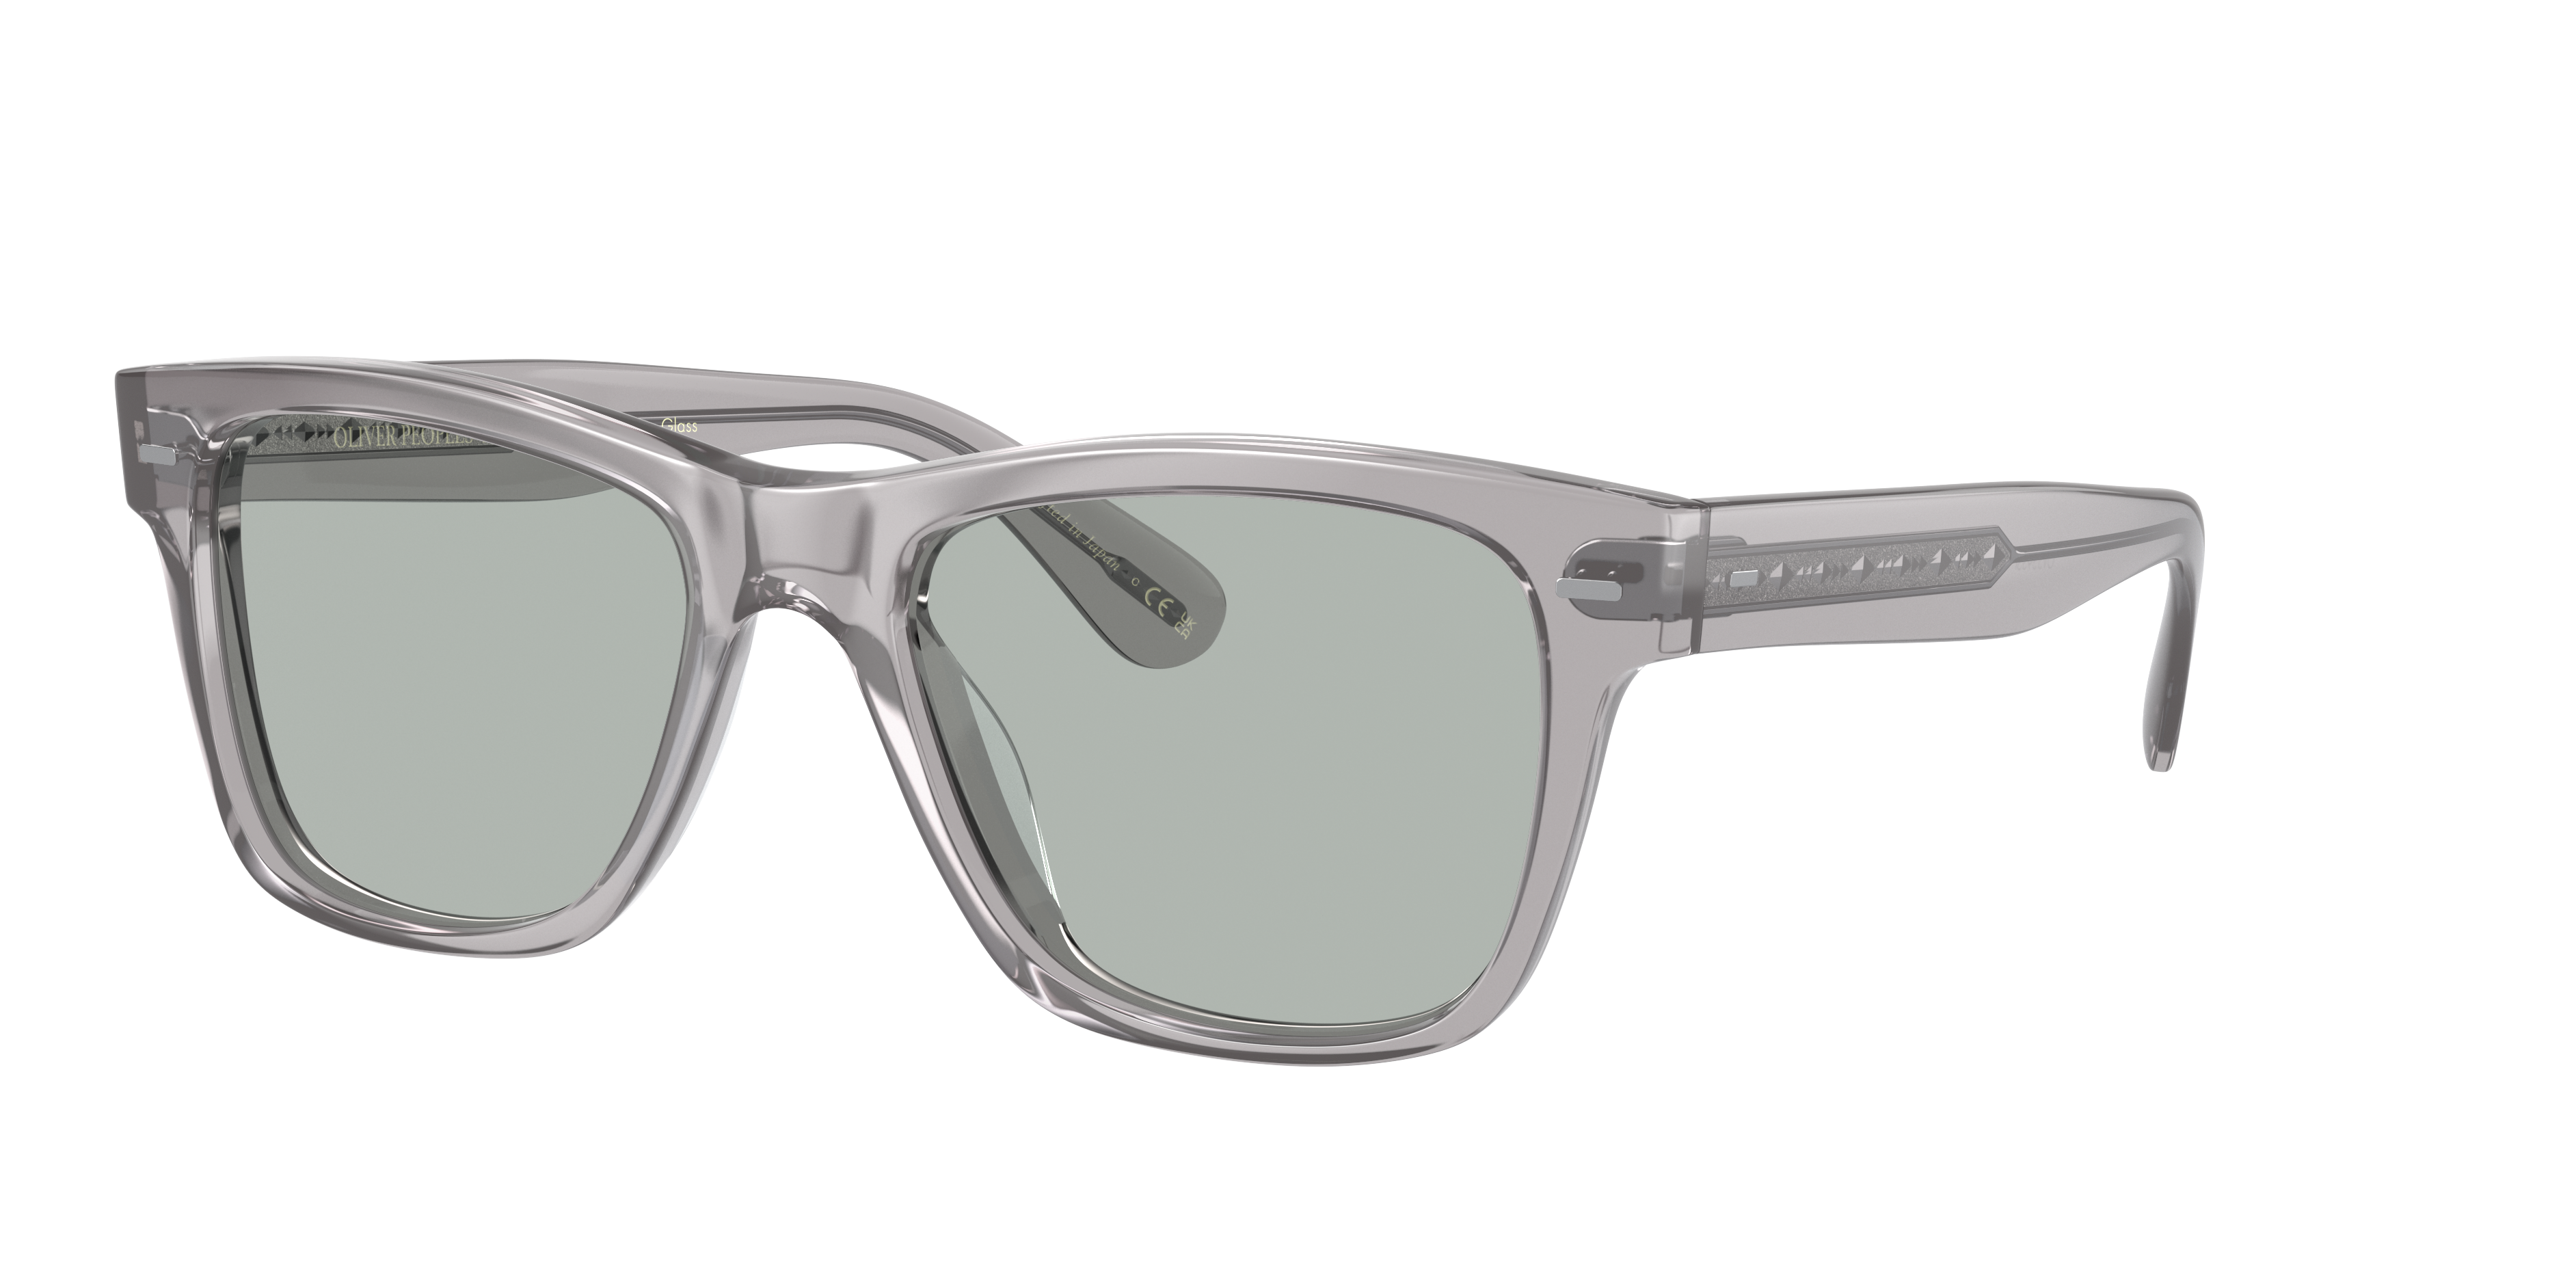 Sunglasses OV5393SF - Workman Grey - Grey Wash - アセテート 